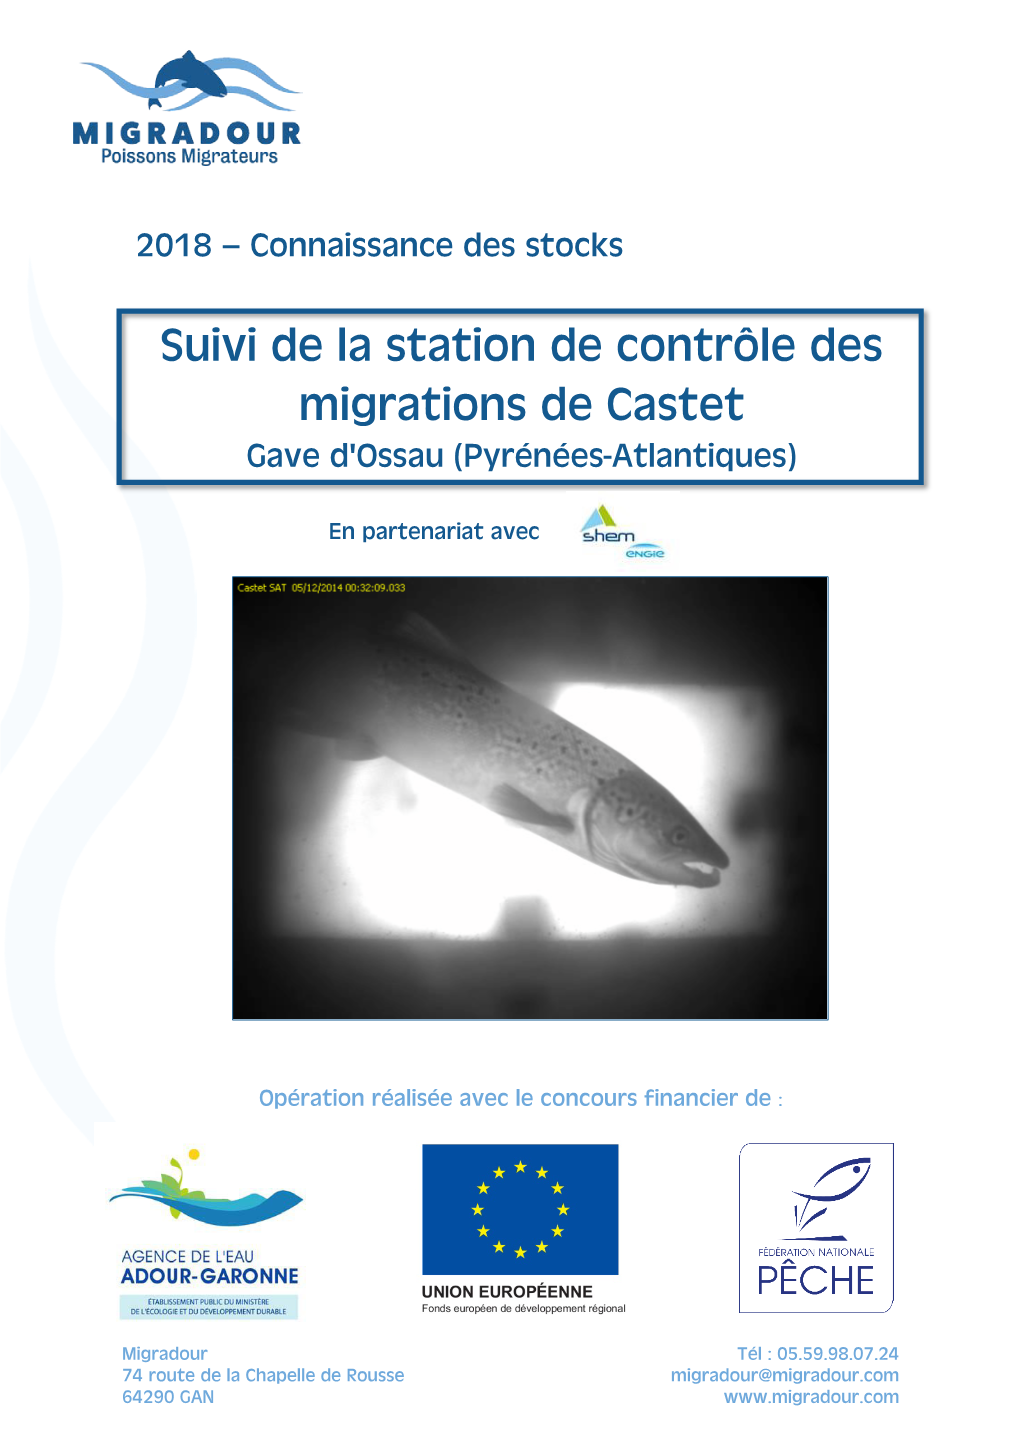 Suivi De La Station De Contrôle Des Migrations De Castet Gave D'ossau (Pyrénées-Atlantiques)